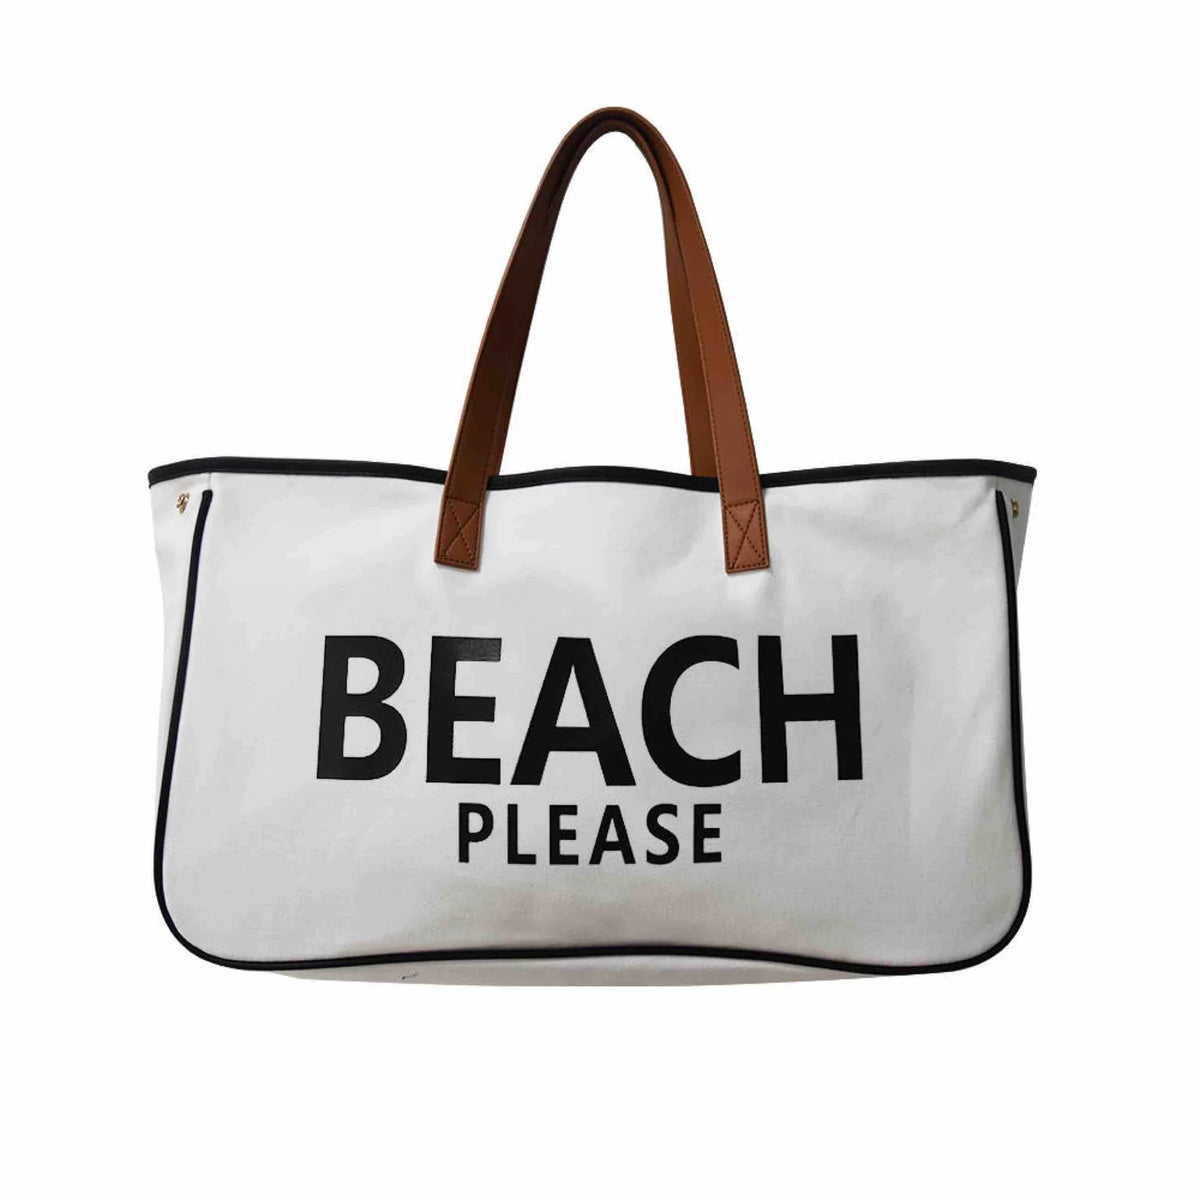 Weekend Getaway Tote Bag - Beach Please